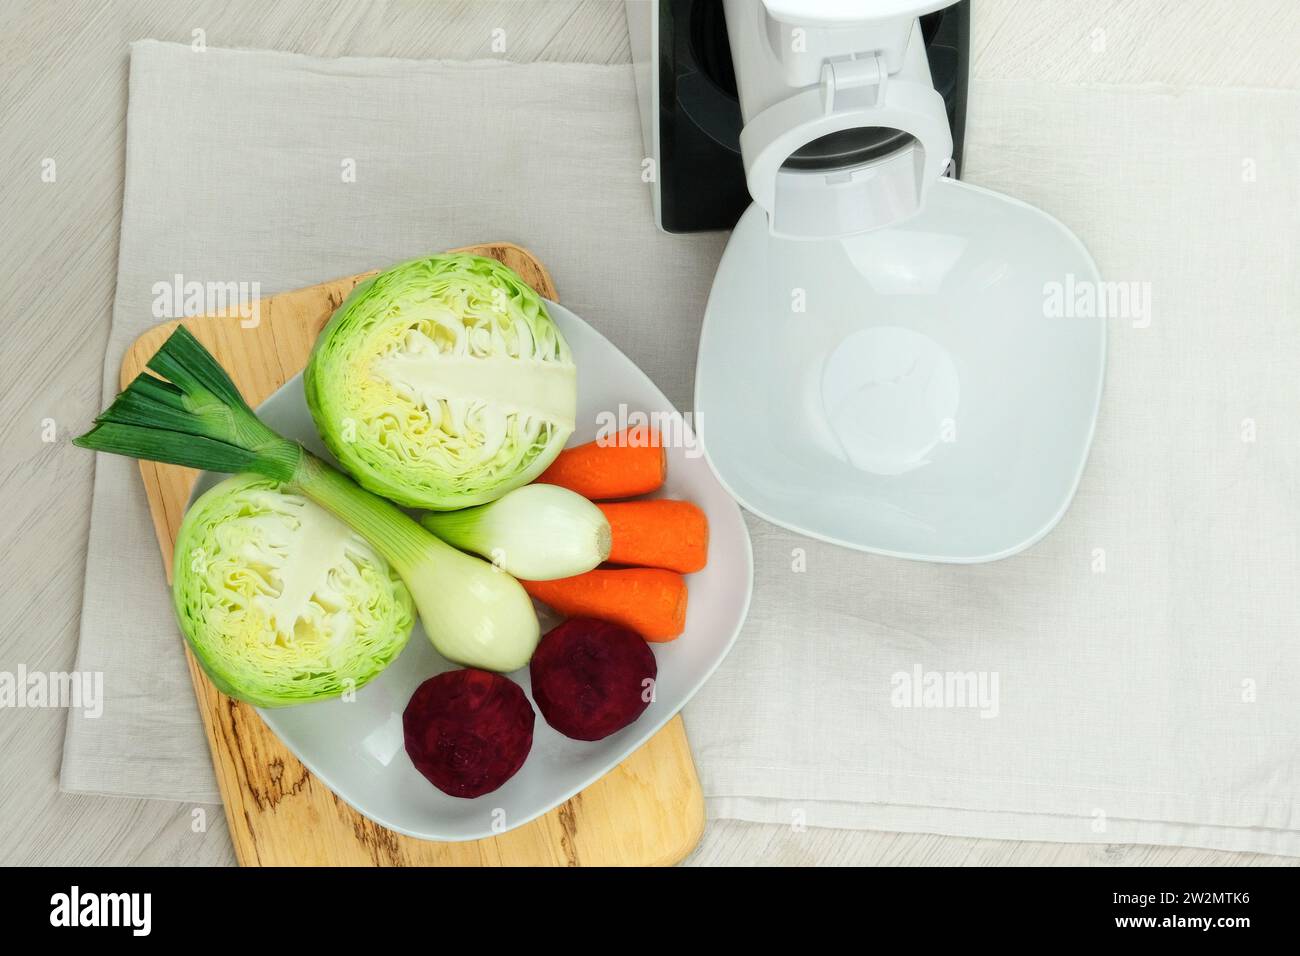 Vegetable Chopper Slicer, Food Chopper D L D Onion Dicer Veggie Slicer –  Creative Cooker